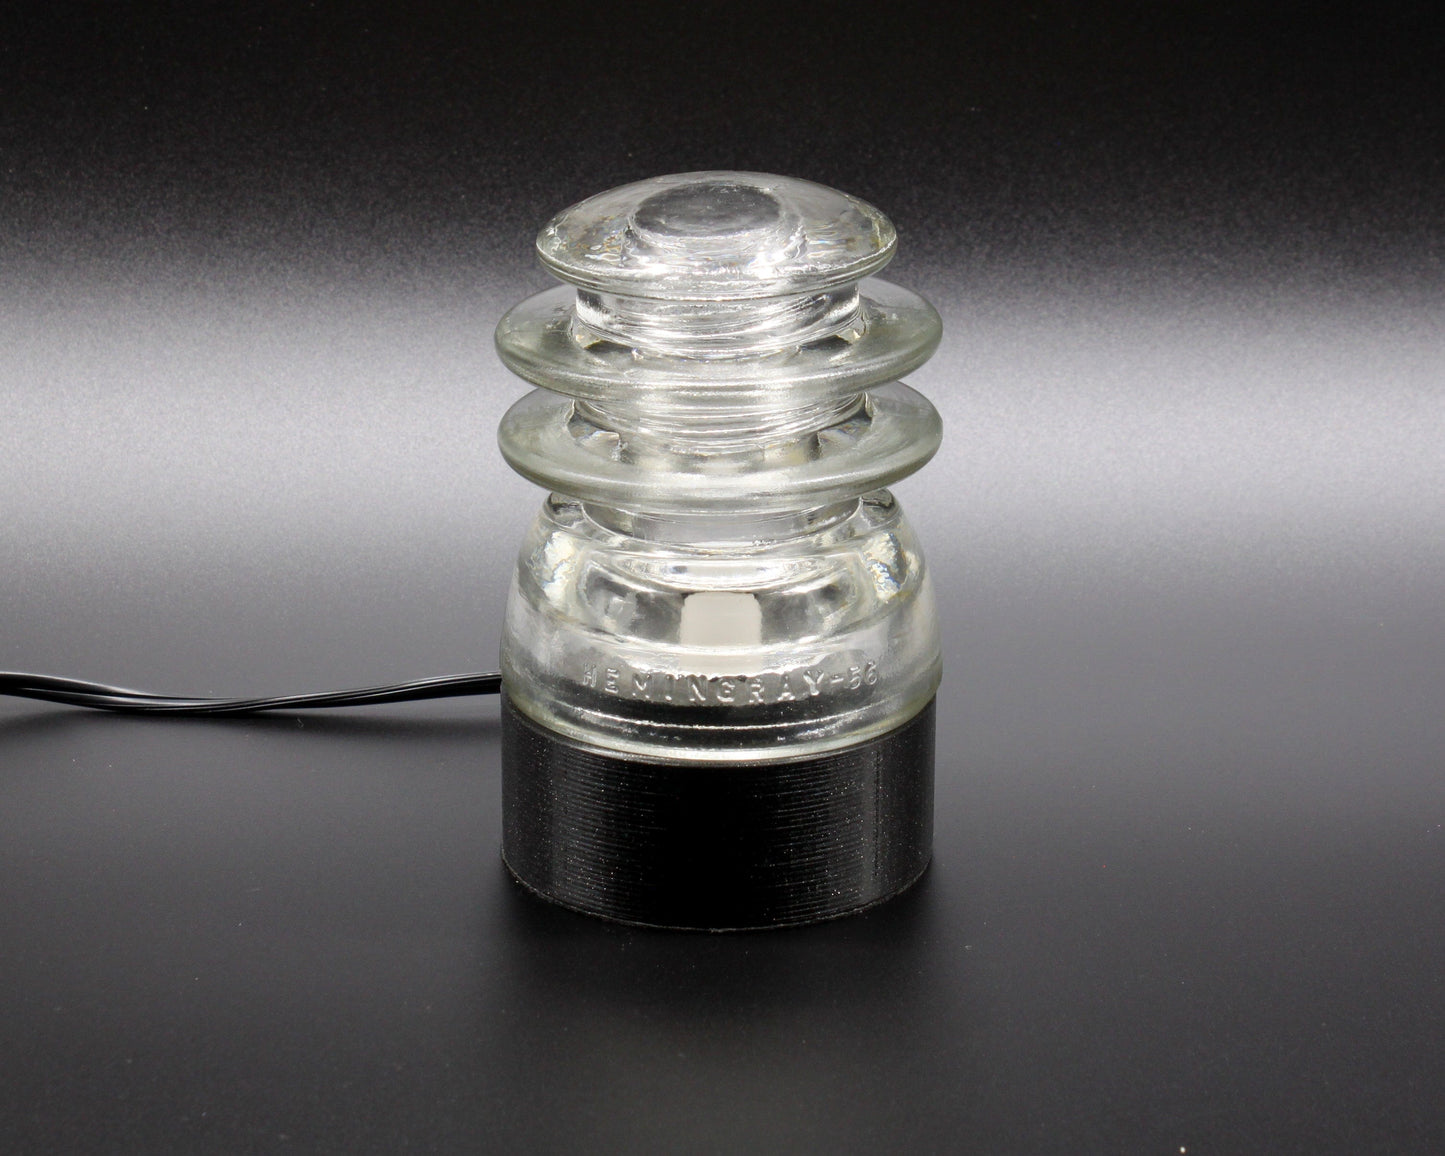 LightAndTimeArt Lamp base Lamp Base for "Hemingray-56" Glass Insulators, Industrial Lighting, Man Cave Decor